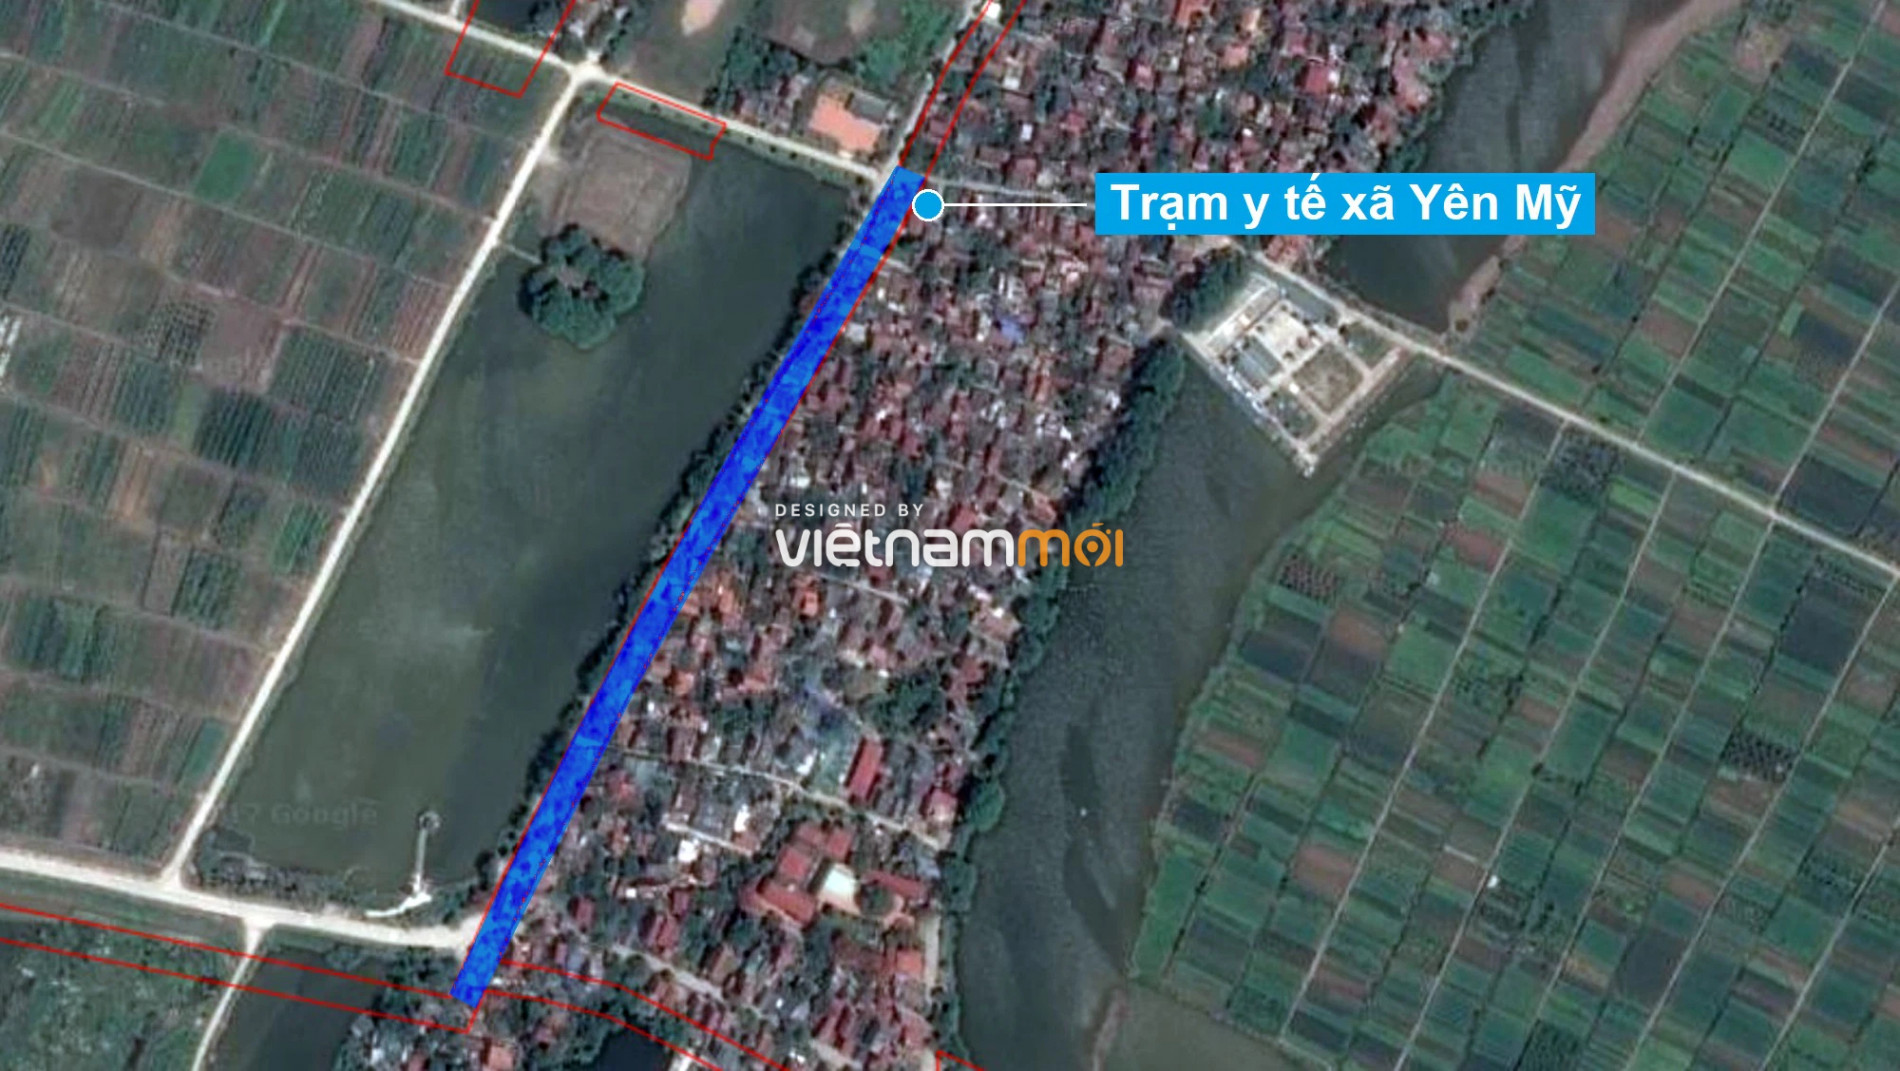 Những khu đất sắp thu hồi để mở đường ở xã Yên Mỹ, Thanh Trì, Hà Nội (phần 1) - Ảnh 10.